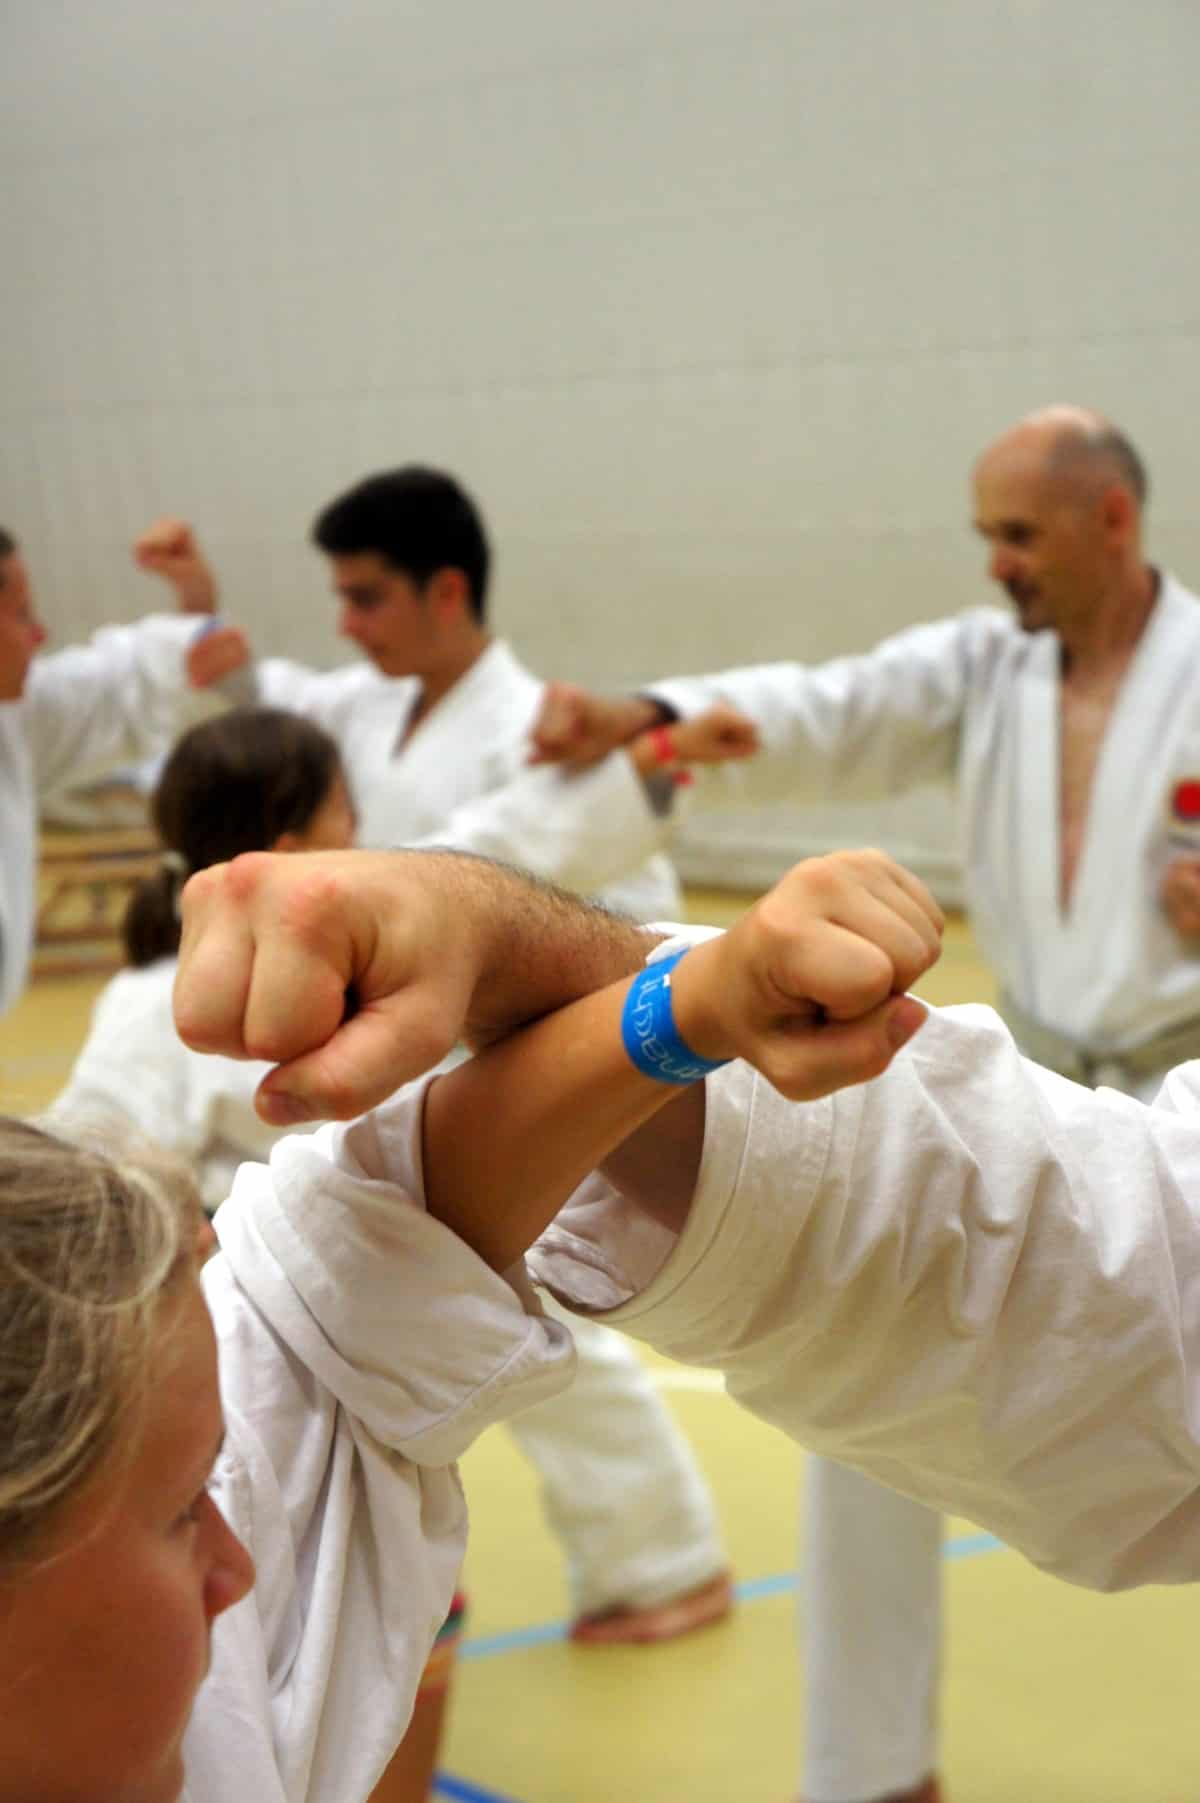 Karatekai Basel - Karate beginnt & endet mit Respekt